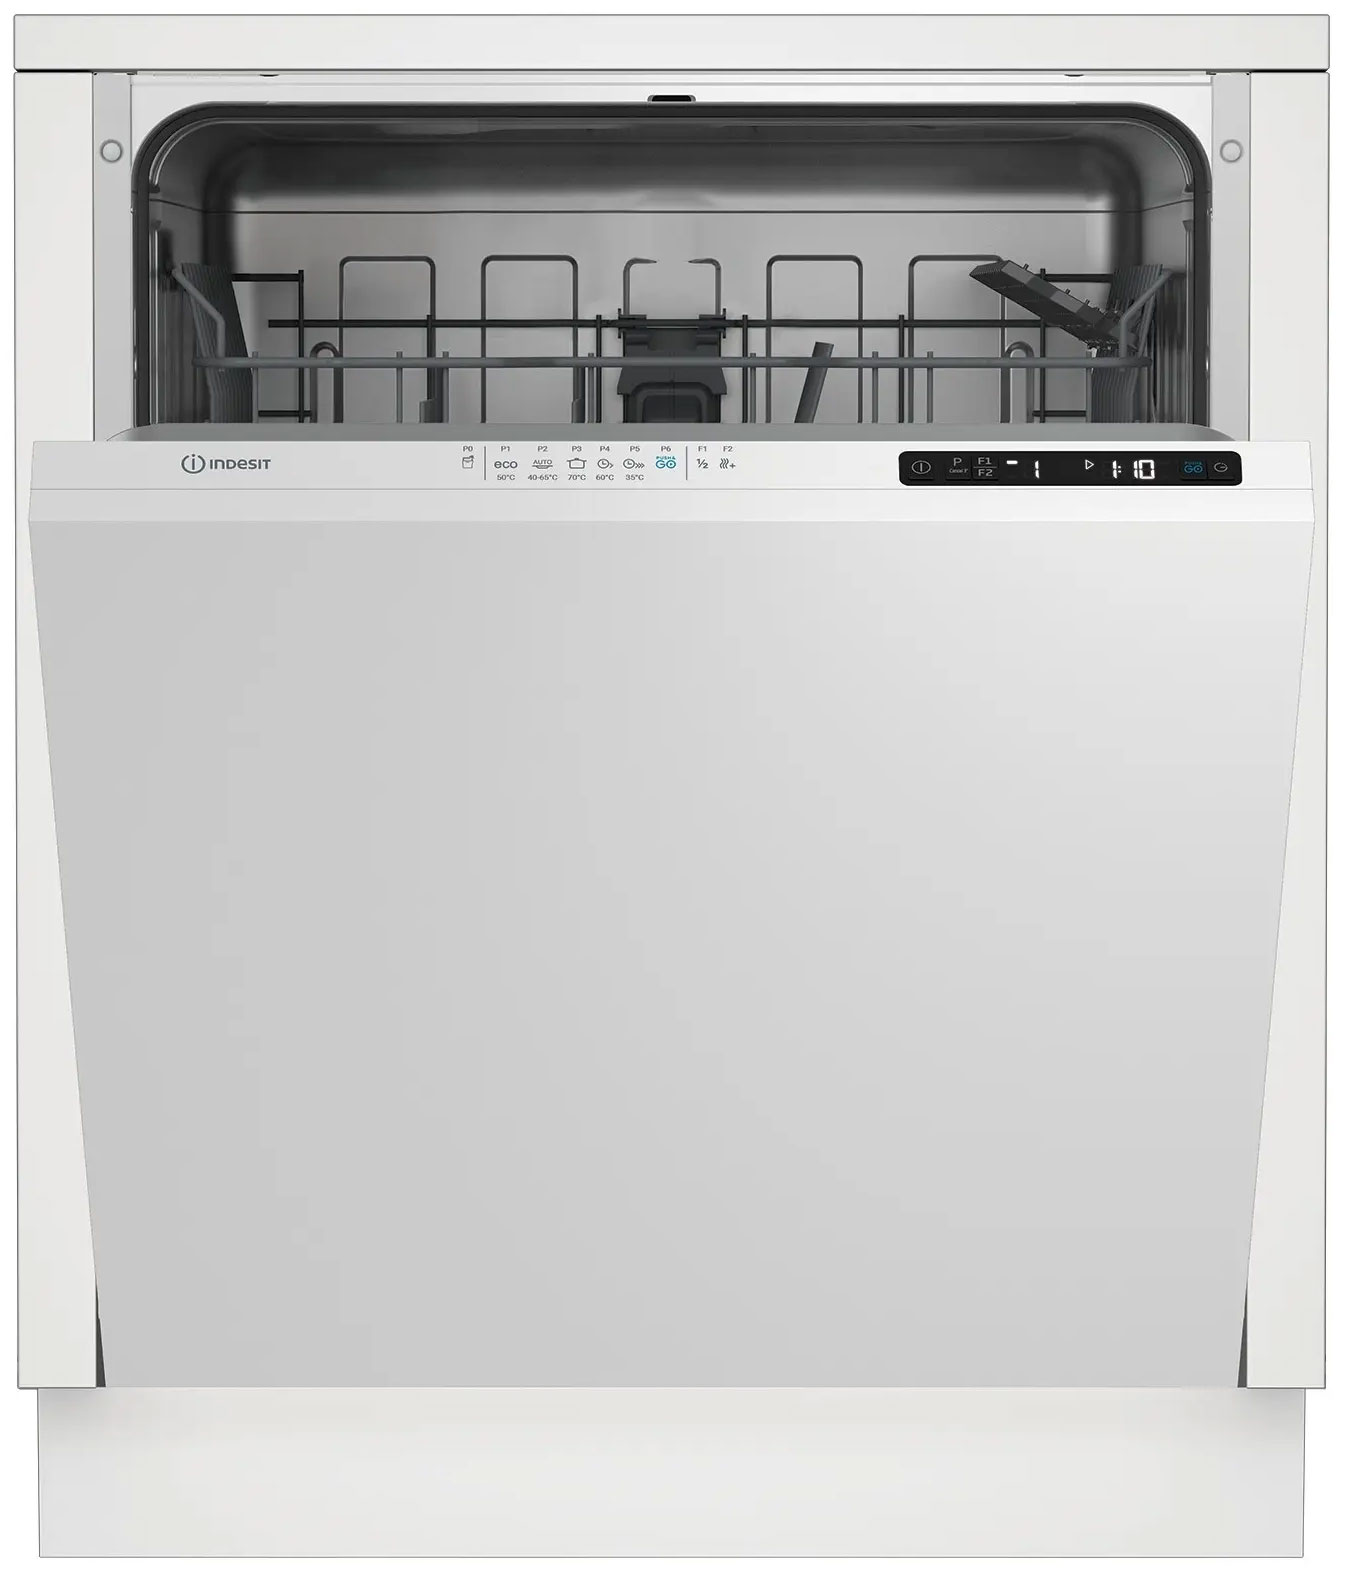 Встраиваемая посудомоечная машина Indesit DI 4C68 AE посудомоечная машина indesit df 3a59